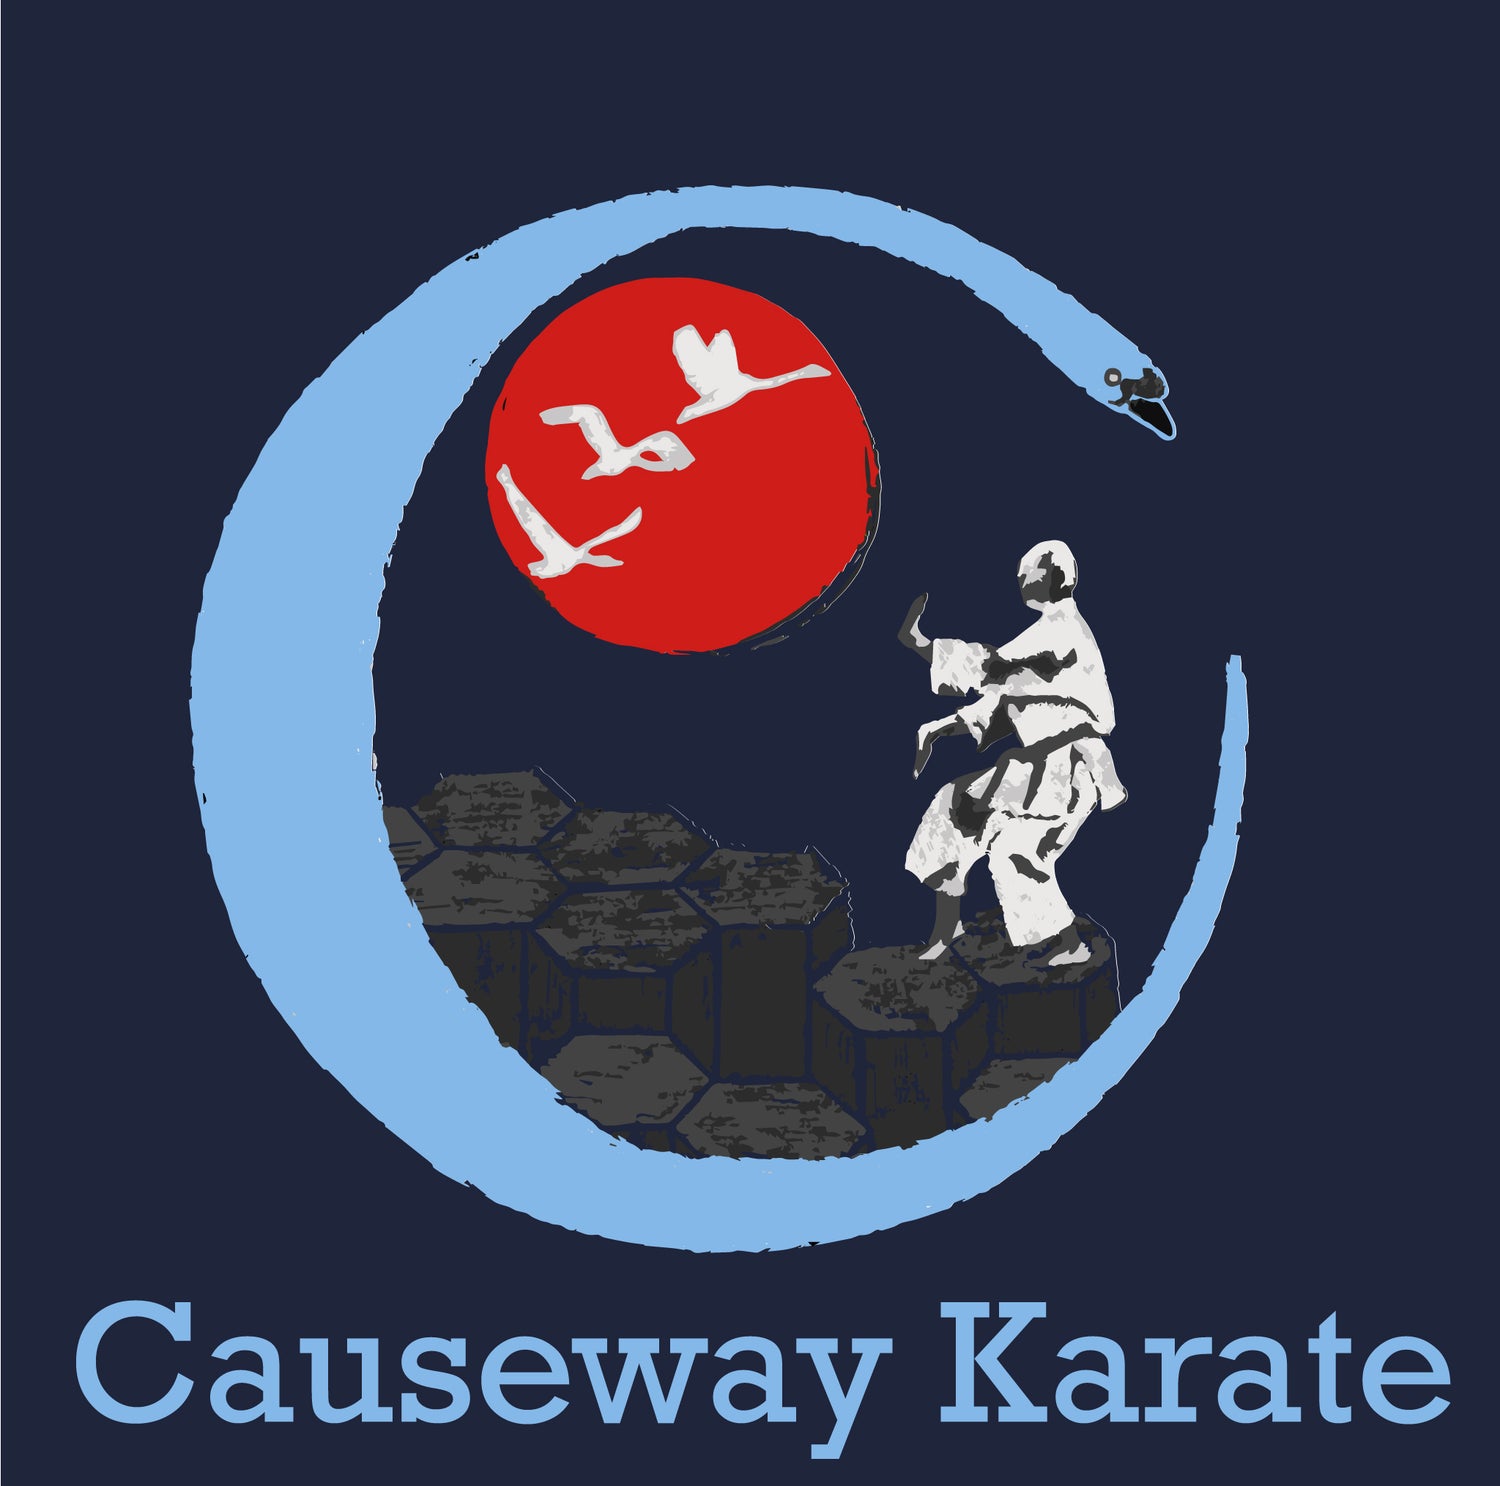 Causeway Karate